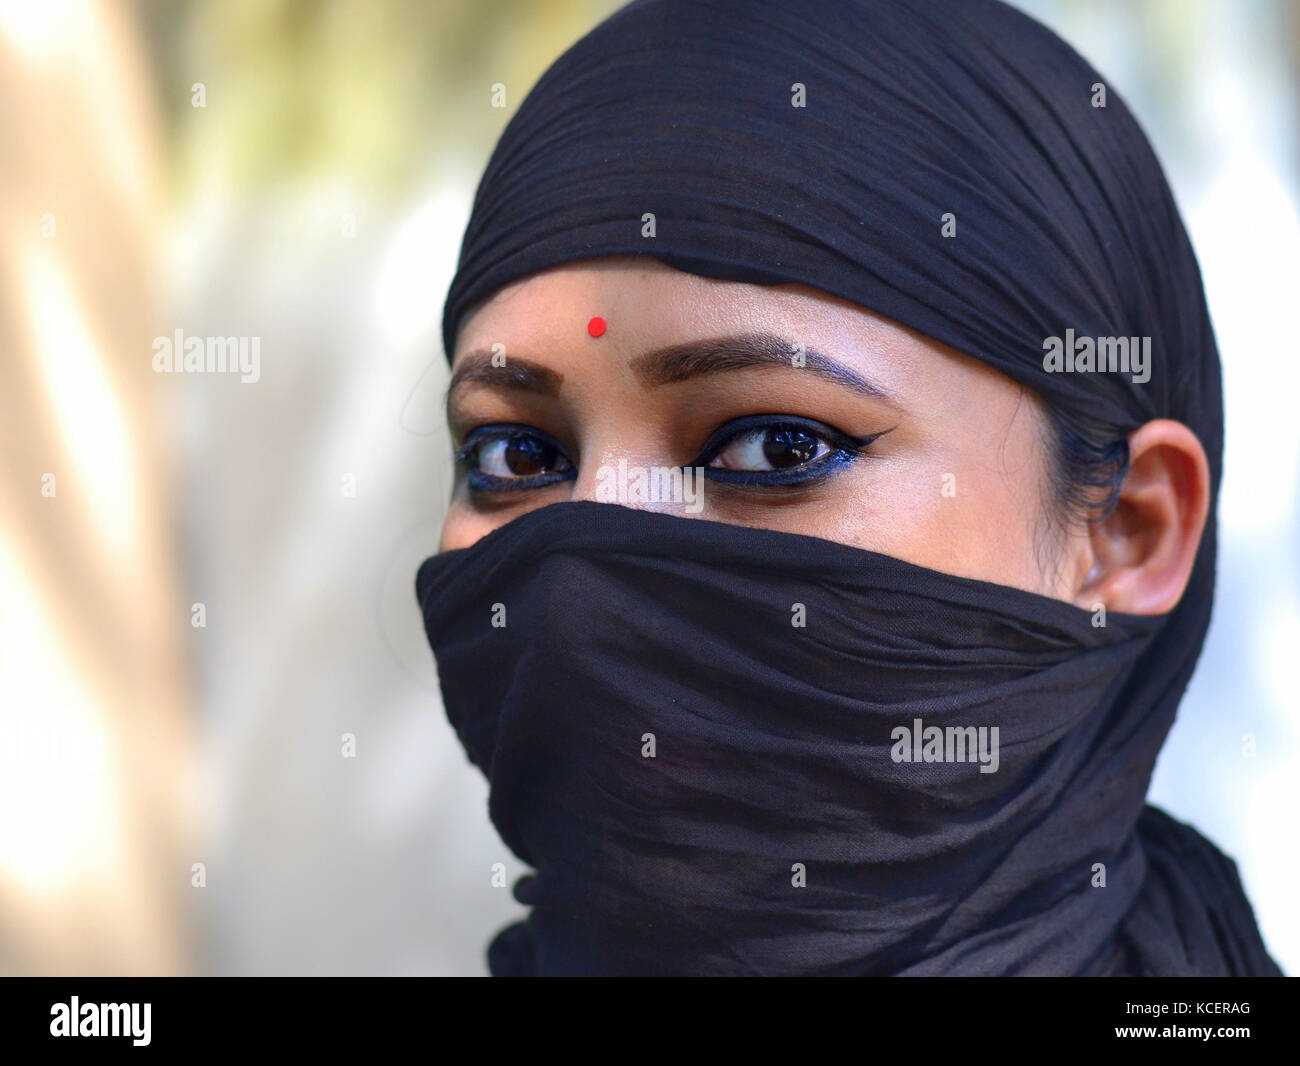 Dreiviertel Blick auf eine junge Assamesische hinduistische Schönheit mit mandelförmigen Augen, die ihr Haar und Gesicht mit einem säkularen, trendigen schwarzen Kopftuch bedeckt Stockfoto